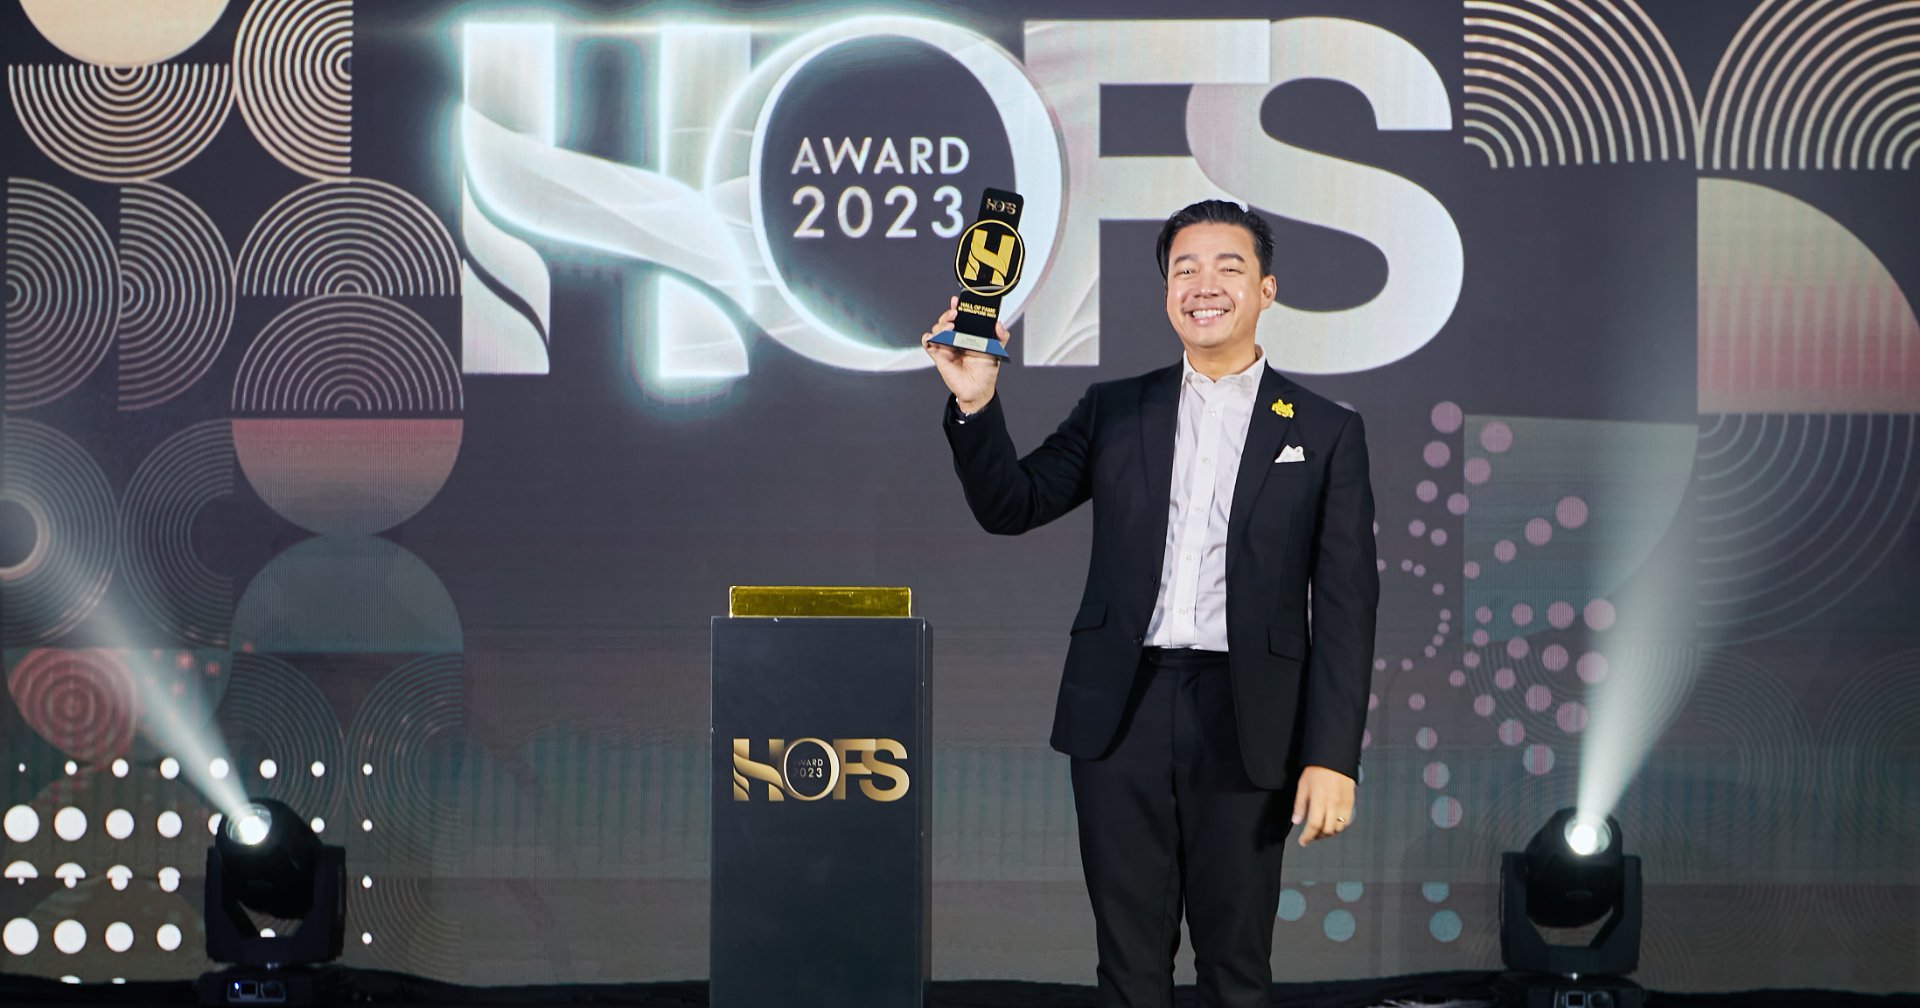 beartai รับรางวัลอินฟลูเอนเซอร์ยอดเยี่ยม HOFS AWARDS 2023 จากประเทศสิงคโปร์